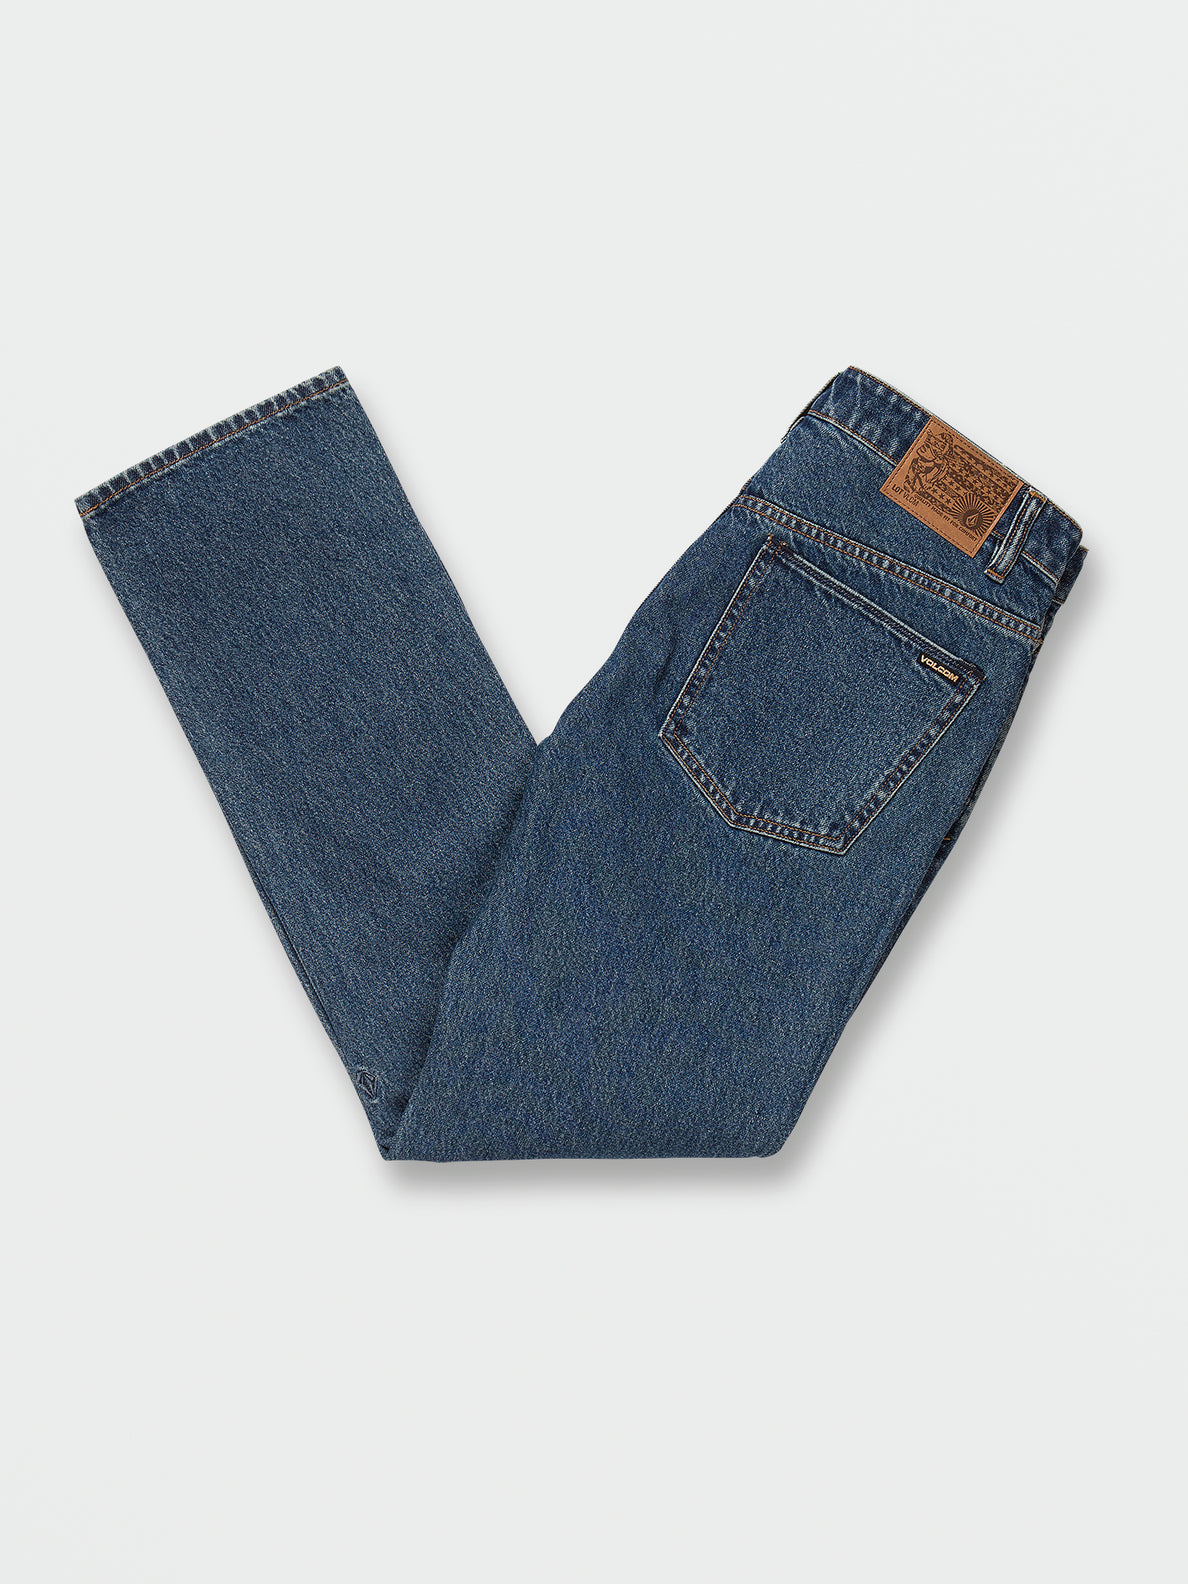 Solver Modern Fit Jeans - Indigo Ridge Wash